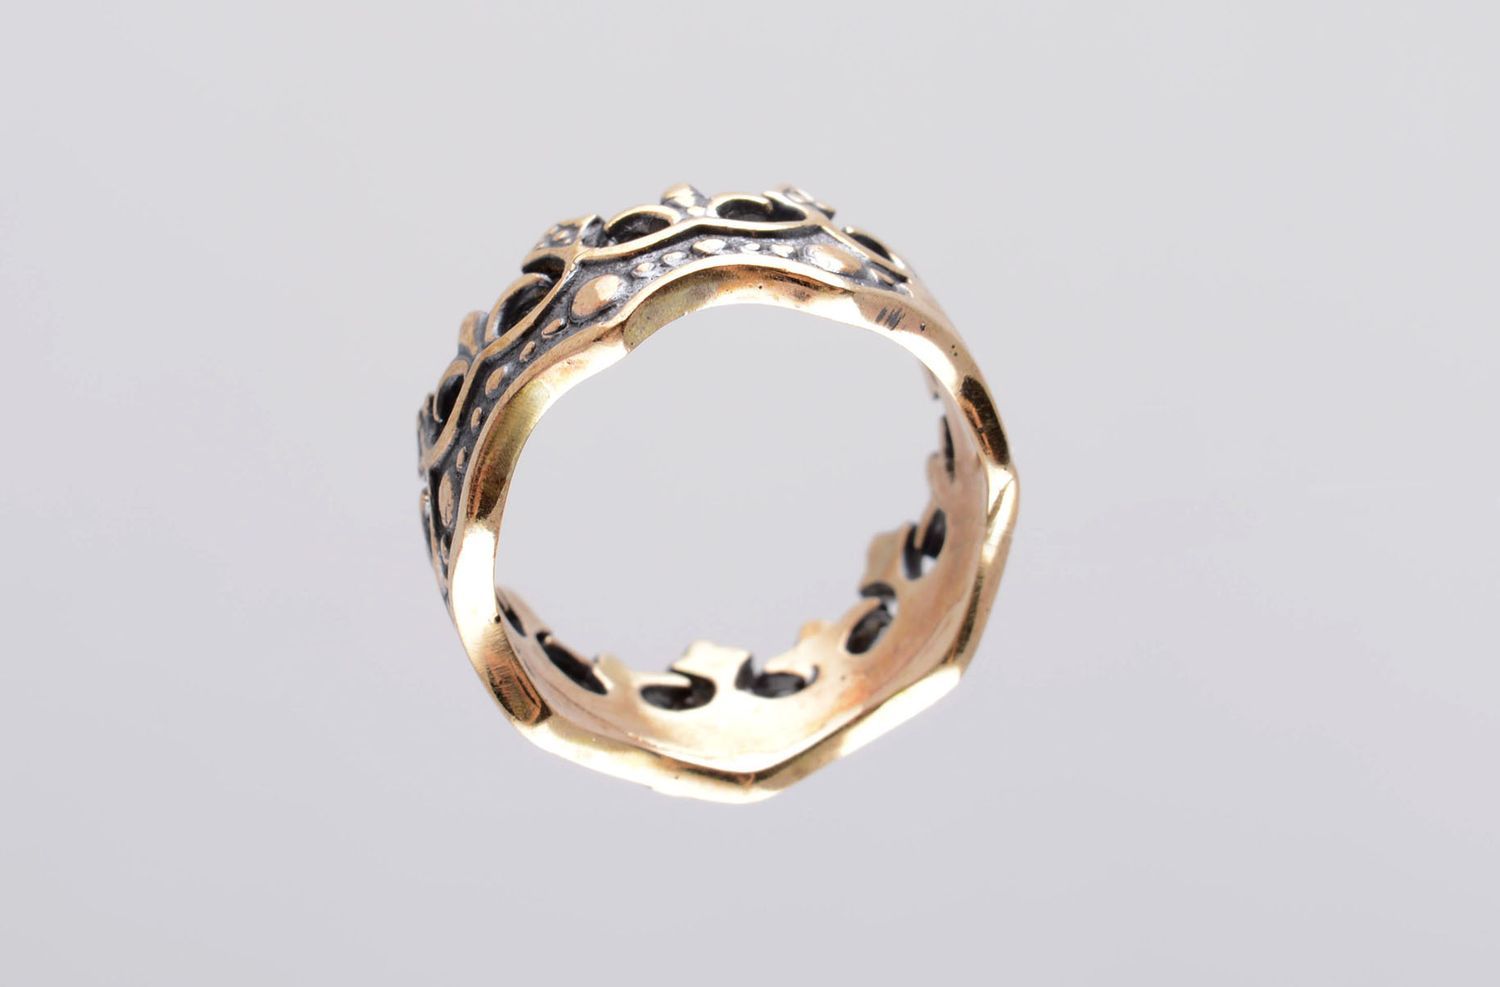 Handmade bronze ring bronze jewelry for women crown ring handmade jewelry photo 4